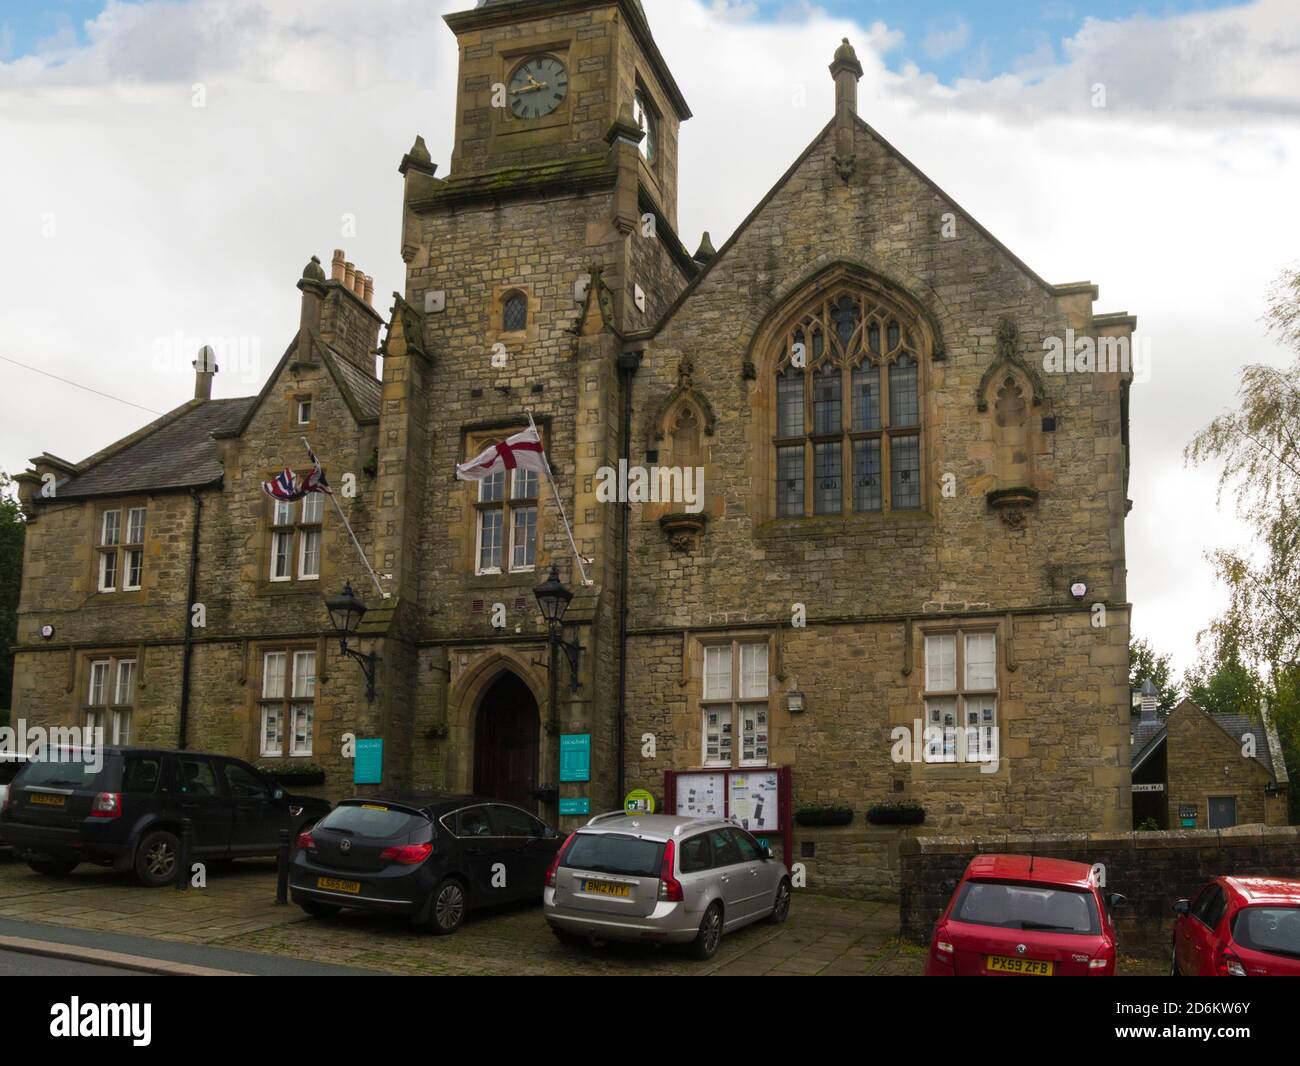 L'hôtel de ville d'Alston abrite les archives historiques du Centre d'information touristique Et la bibliothèque publique Cumbria Angleterre Royaume-Uni lieu pour de nombreux locaux événements sociaux Banque D'Images